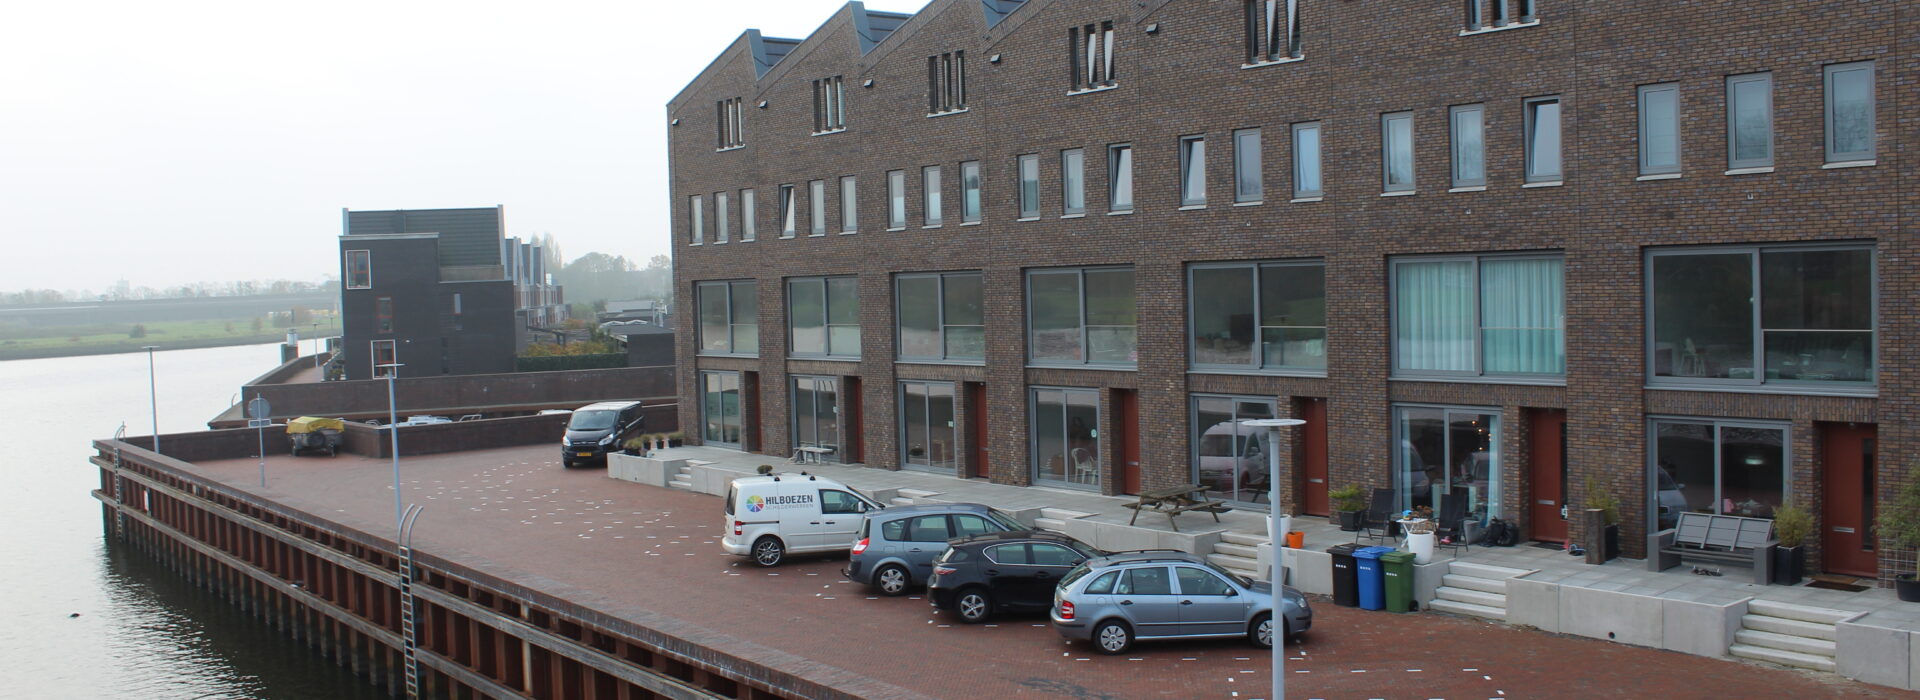 Bosch Beton - Verhoogd terras van keerwanden bij kadewoningen in Zwolle Stadshagen